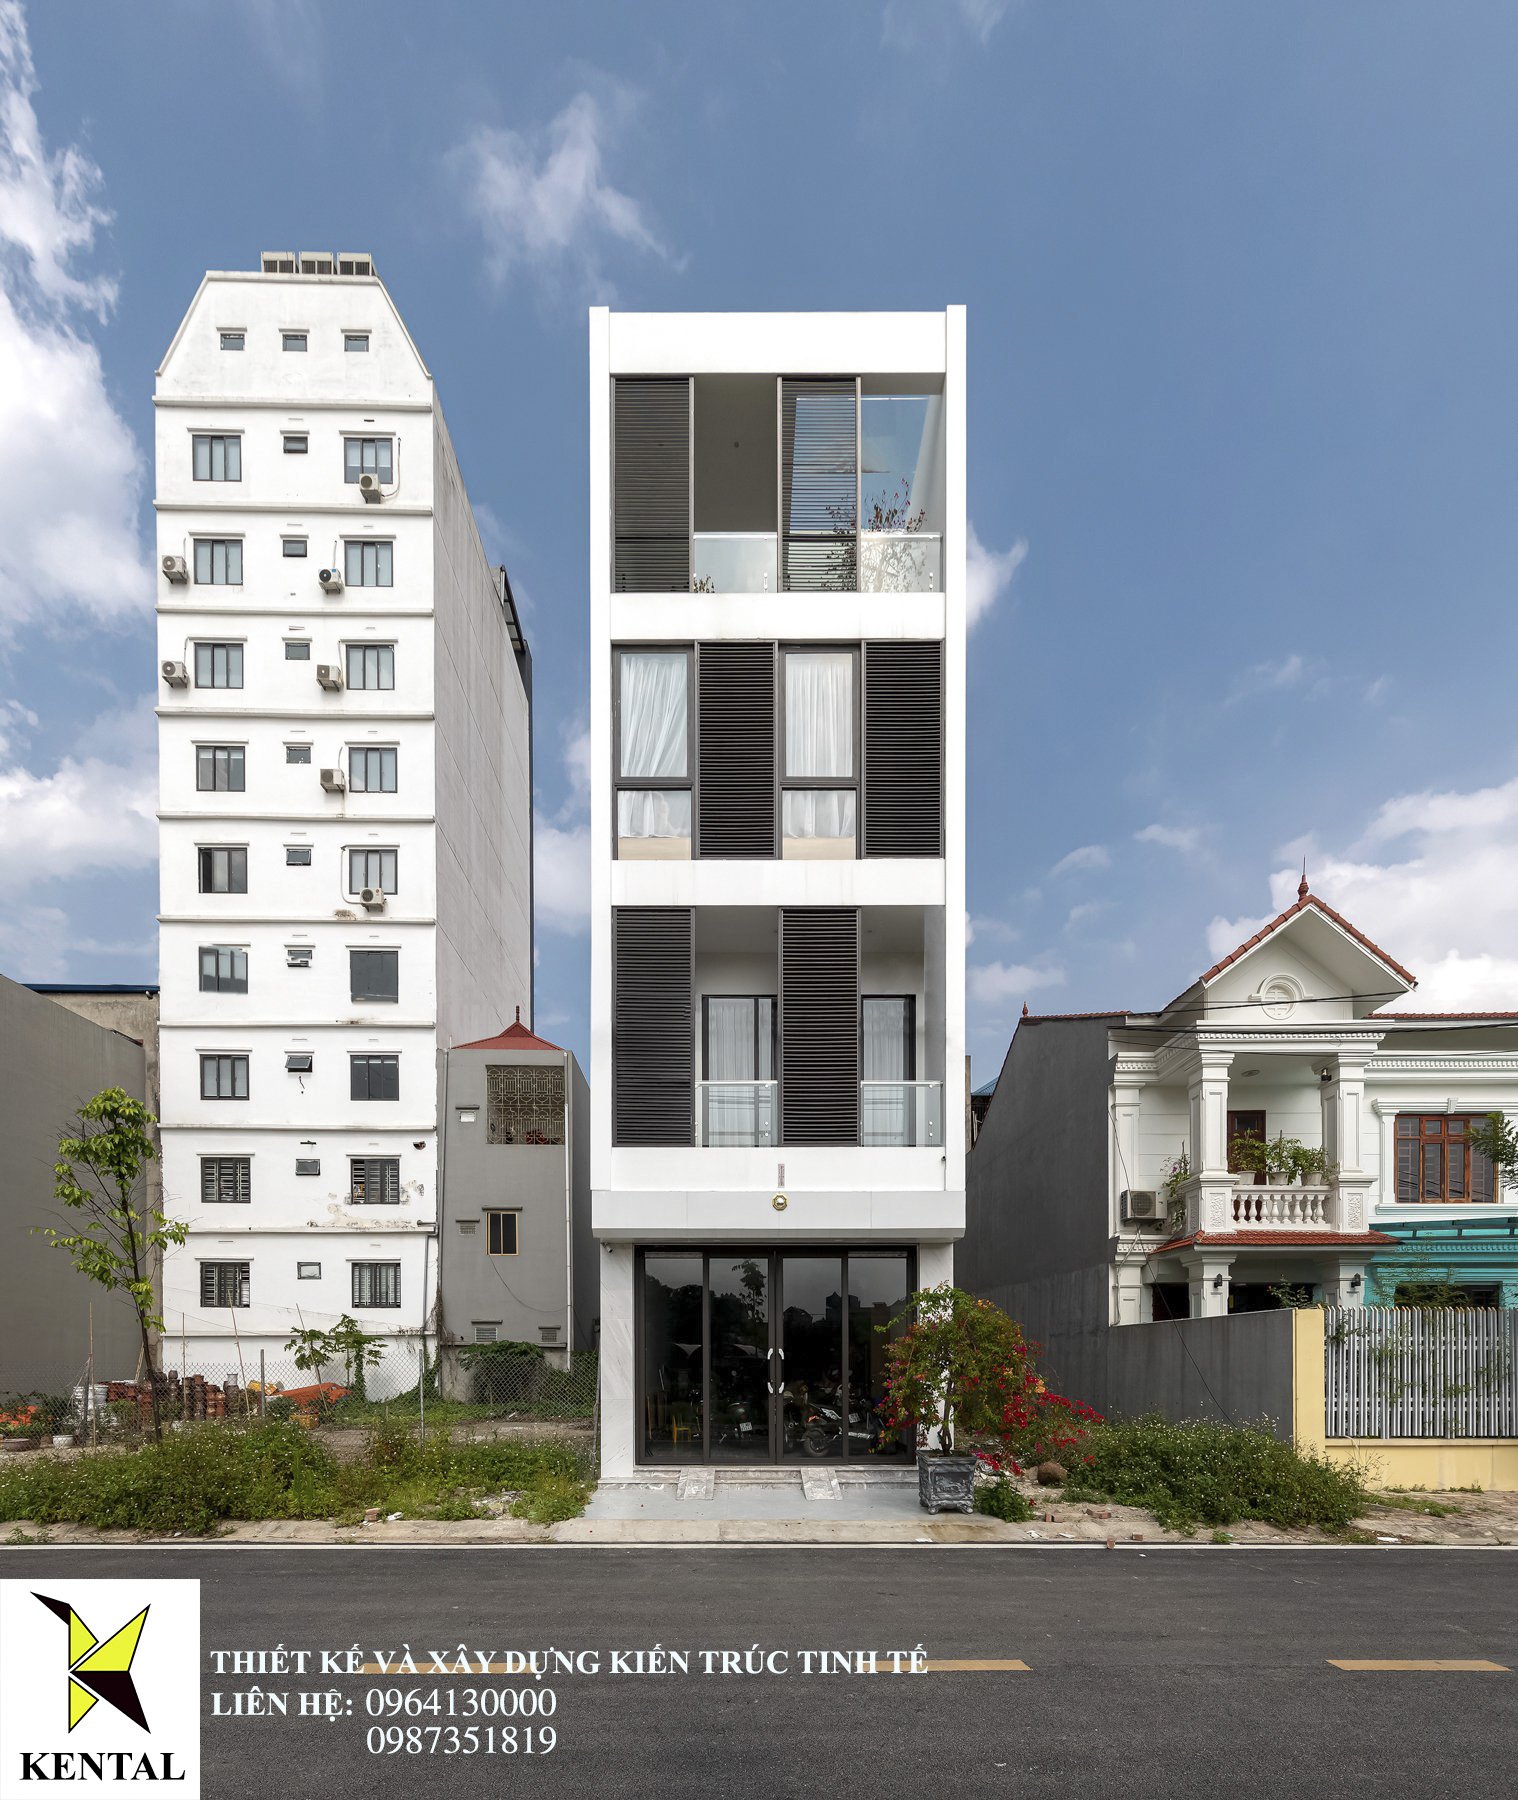 Công trình nhà phố Navy’s House tại Lạng Sơn– Khởi nguồn cho tương lai hạnh phúc